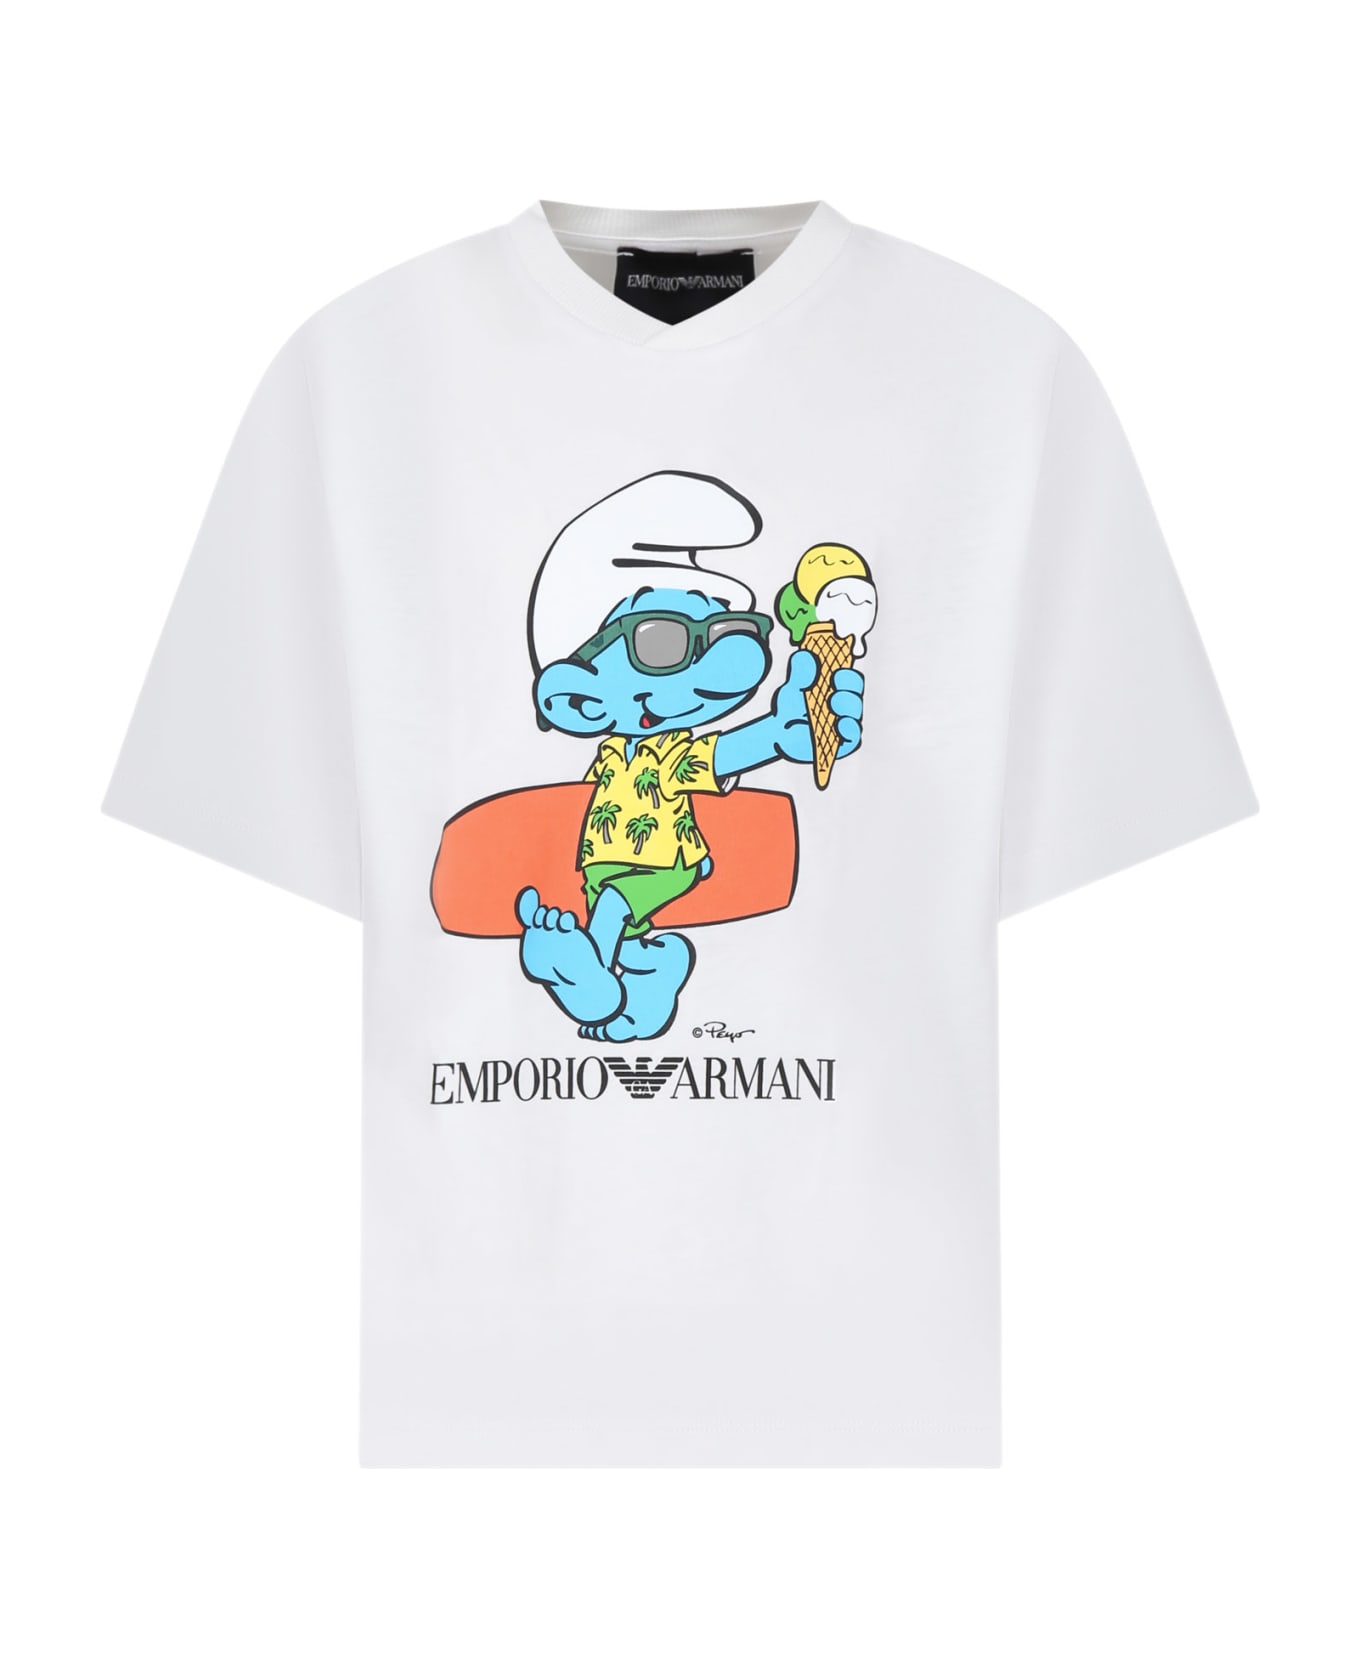 Emporio Armani White T-shirt For Boy With Smurf Print - Bianco Caldo